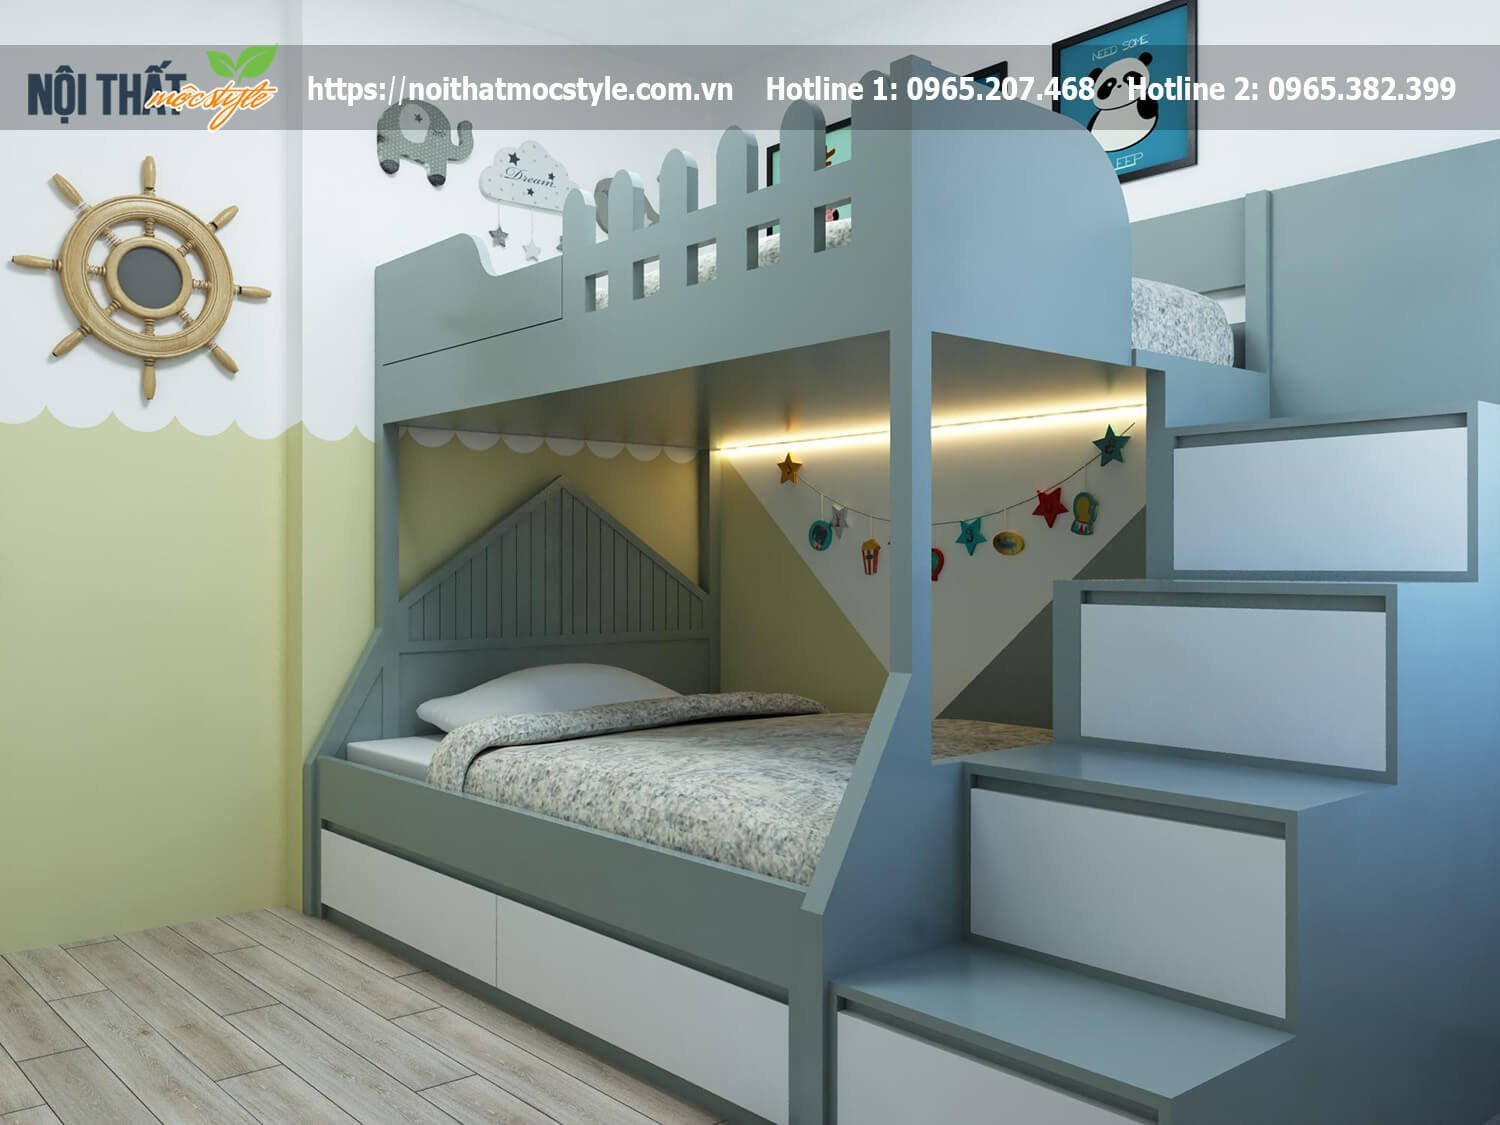 Thiết kế nội thất phòng ngủ bé trai mã PN01 - Nội thất Mộc Style